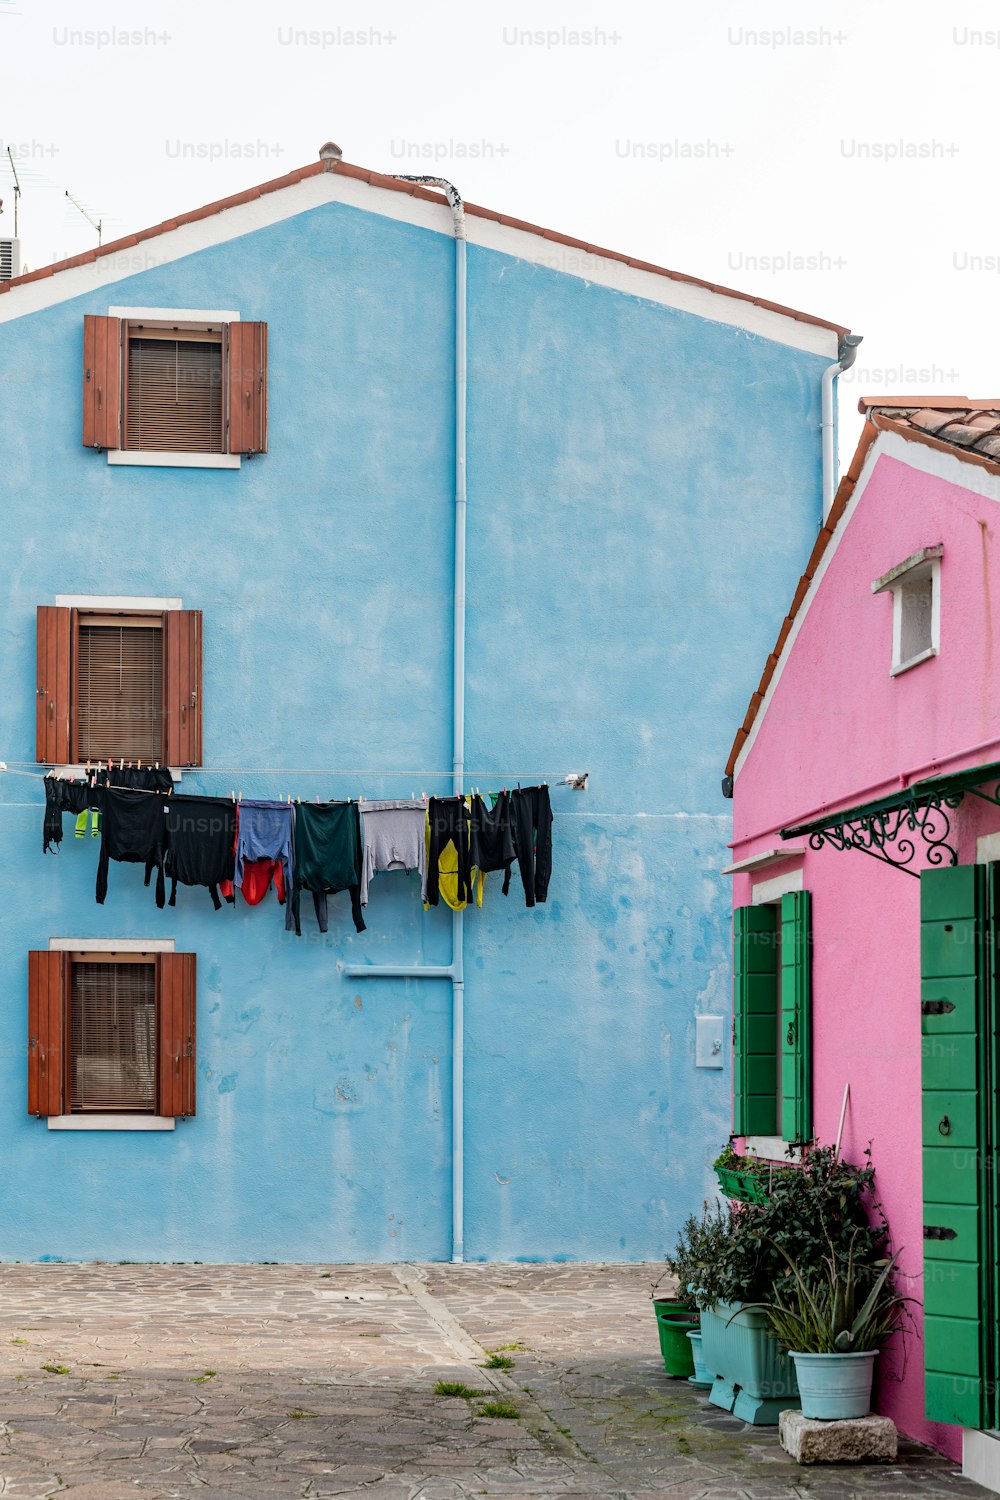 roupas penduradas para secar em um varal em frente a um prédio azul